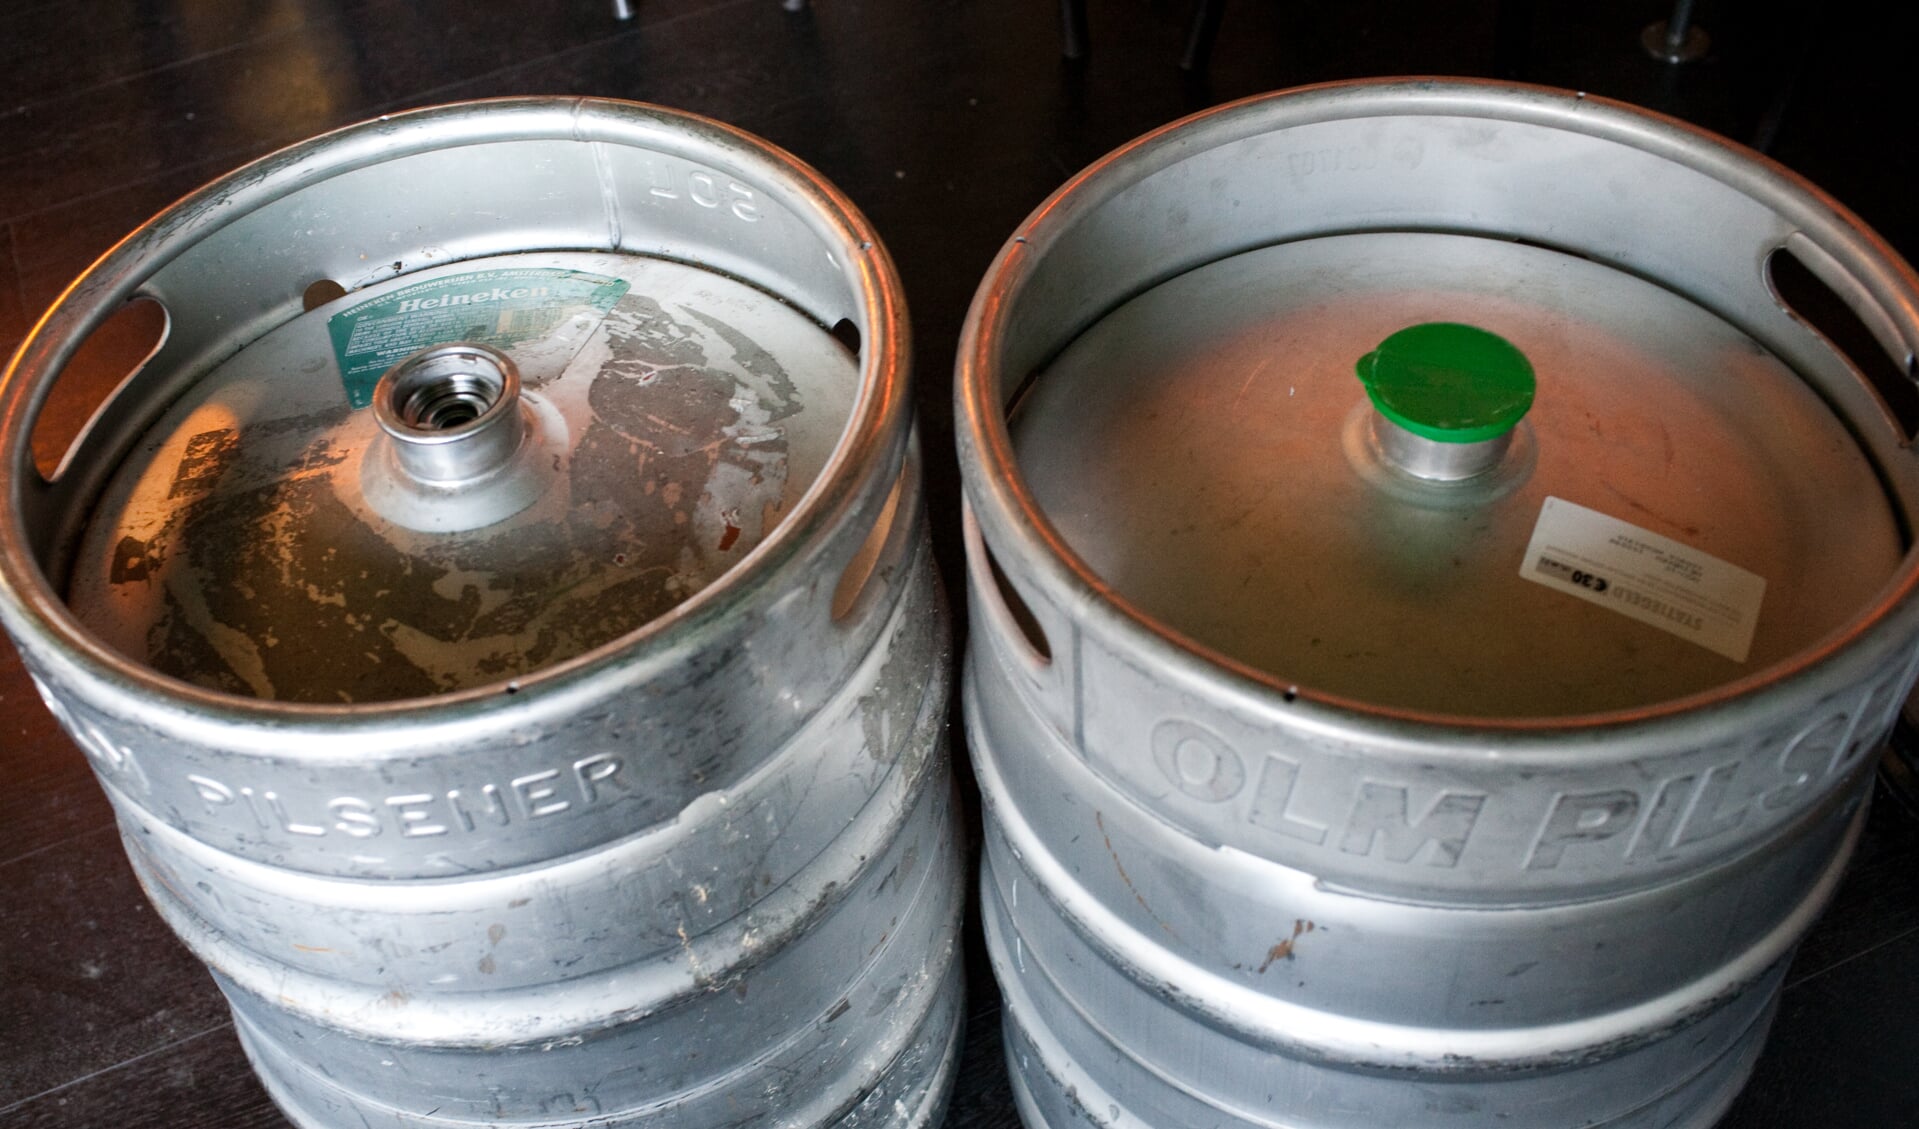 Bij de Weesper bierbrouwer staan echter ook Olm vaten, afgezegeld door Heineken (sticker linksboven)